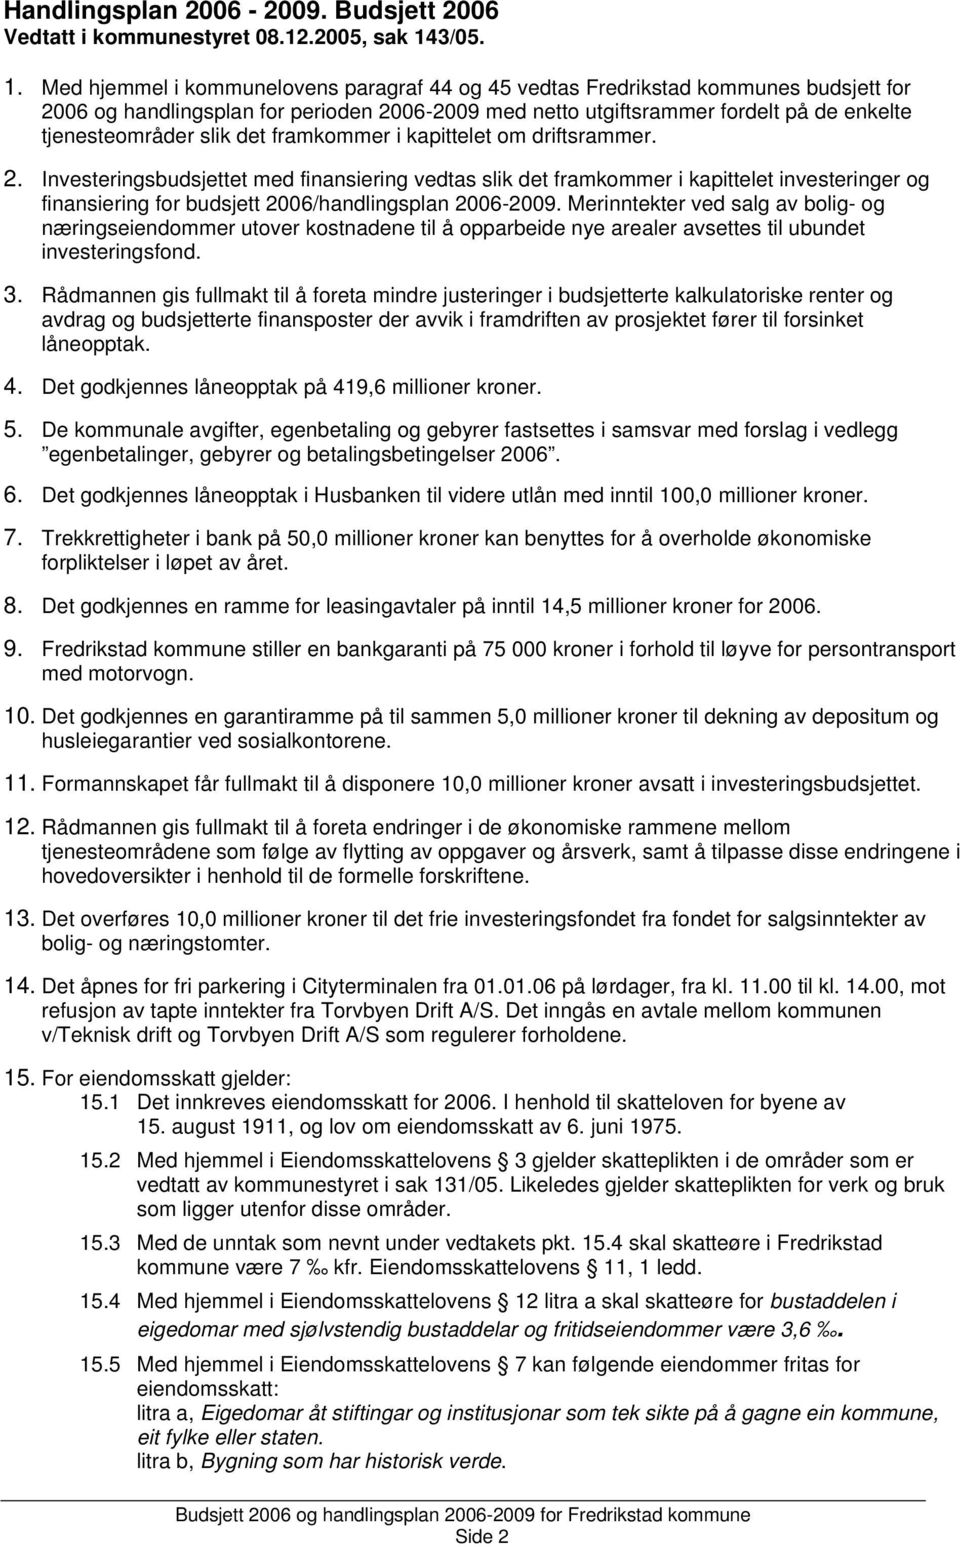 Med hjemmel i kommunelovens paragraf 44 og 45 vedtas Fredrikstad kommunes budsjett for 2006 og handlingsplan for perioden 2006-2009 med netto utgiftsrammer fordelt på de enkelte tjenesteområder slik